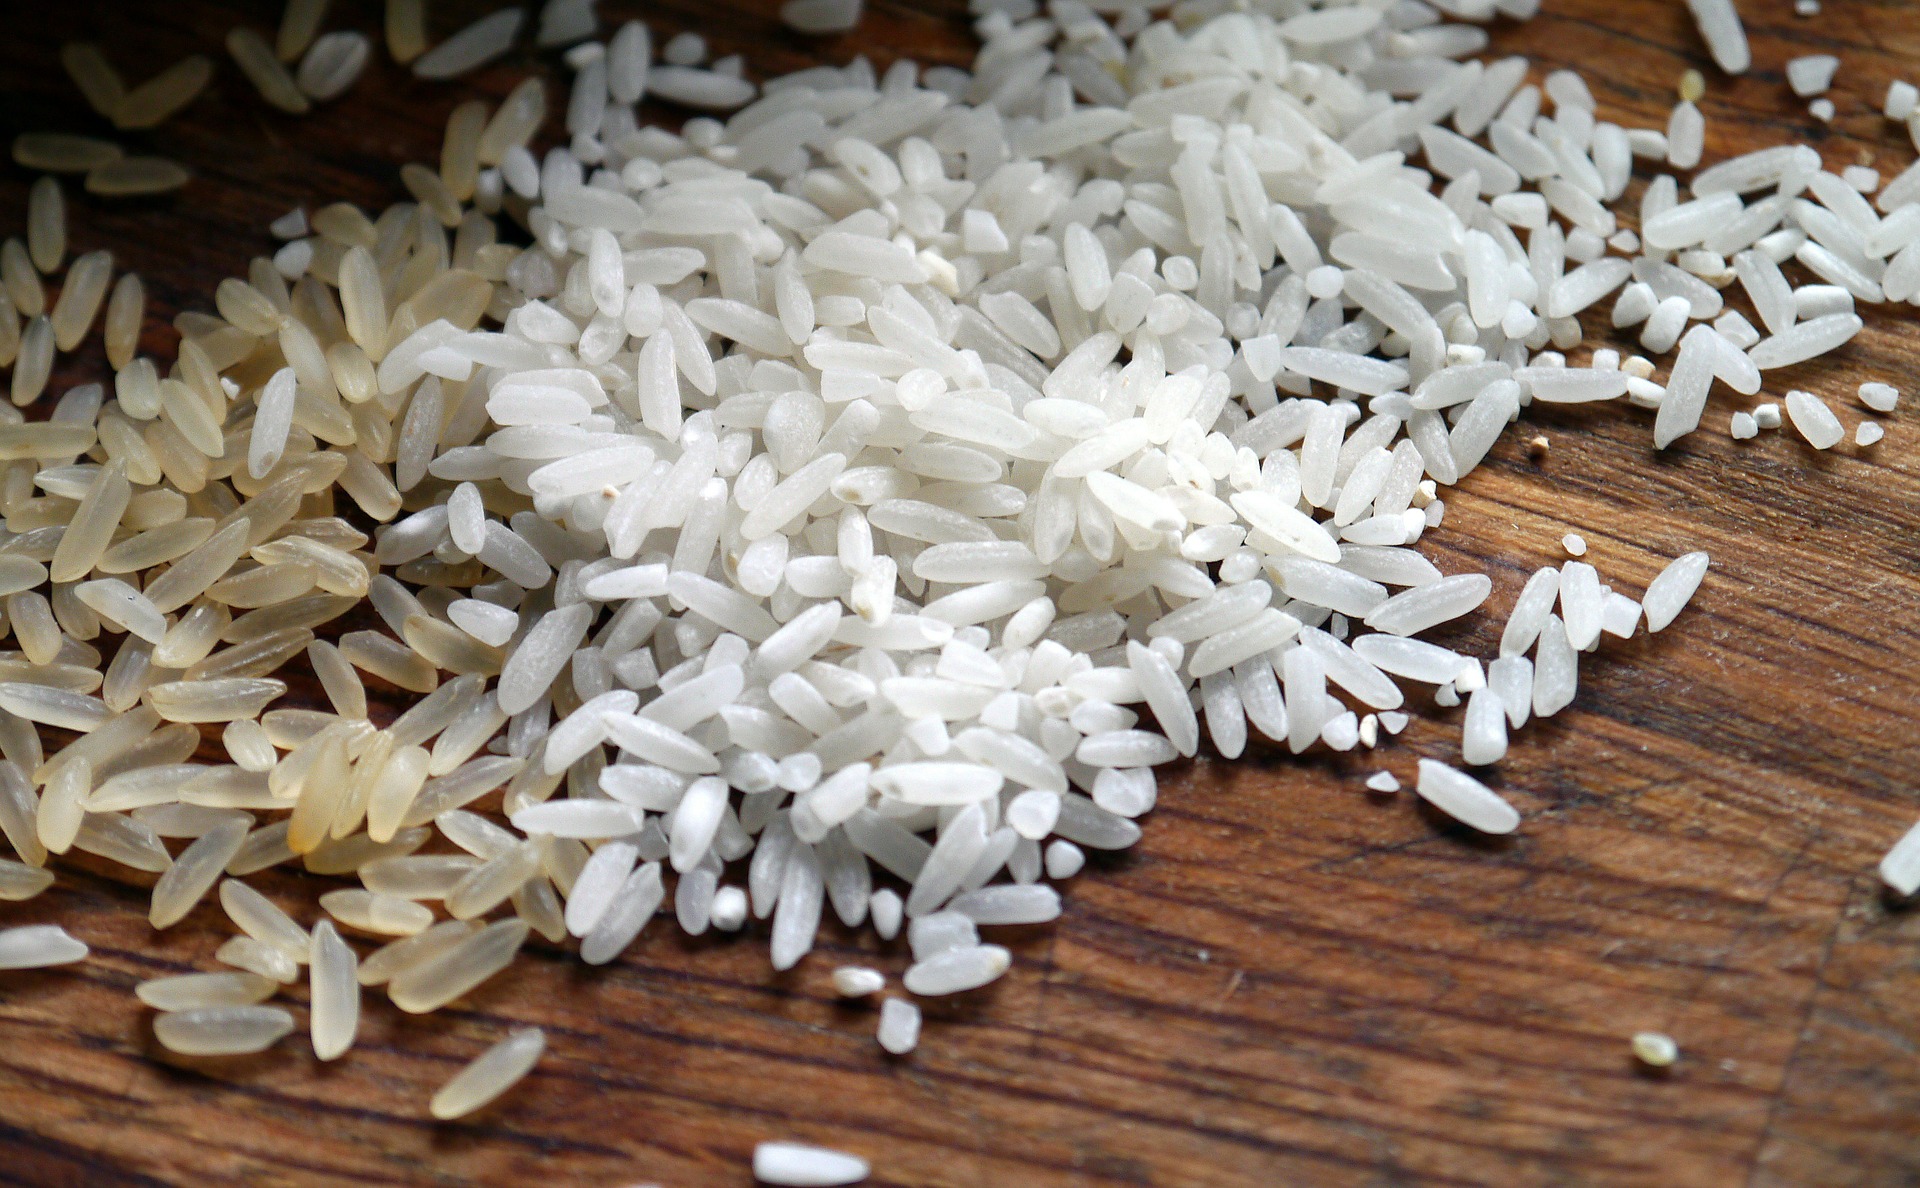 Cara mengeringkan smartphone yang terkena air dengan beras